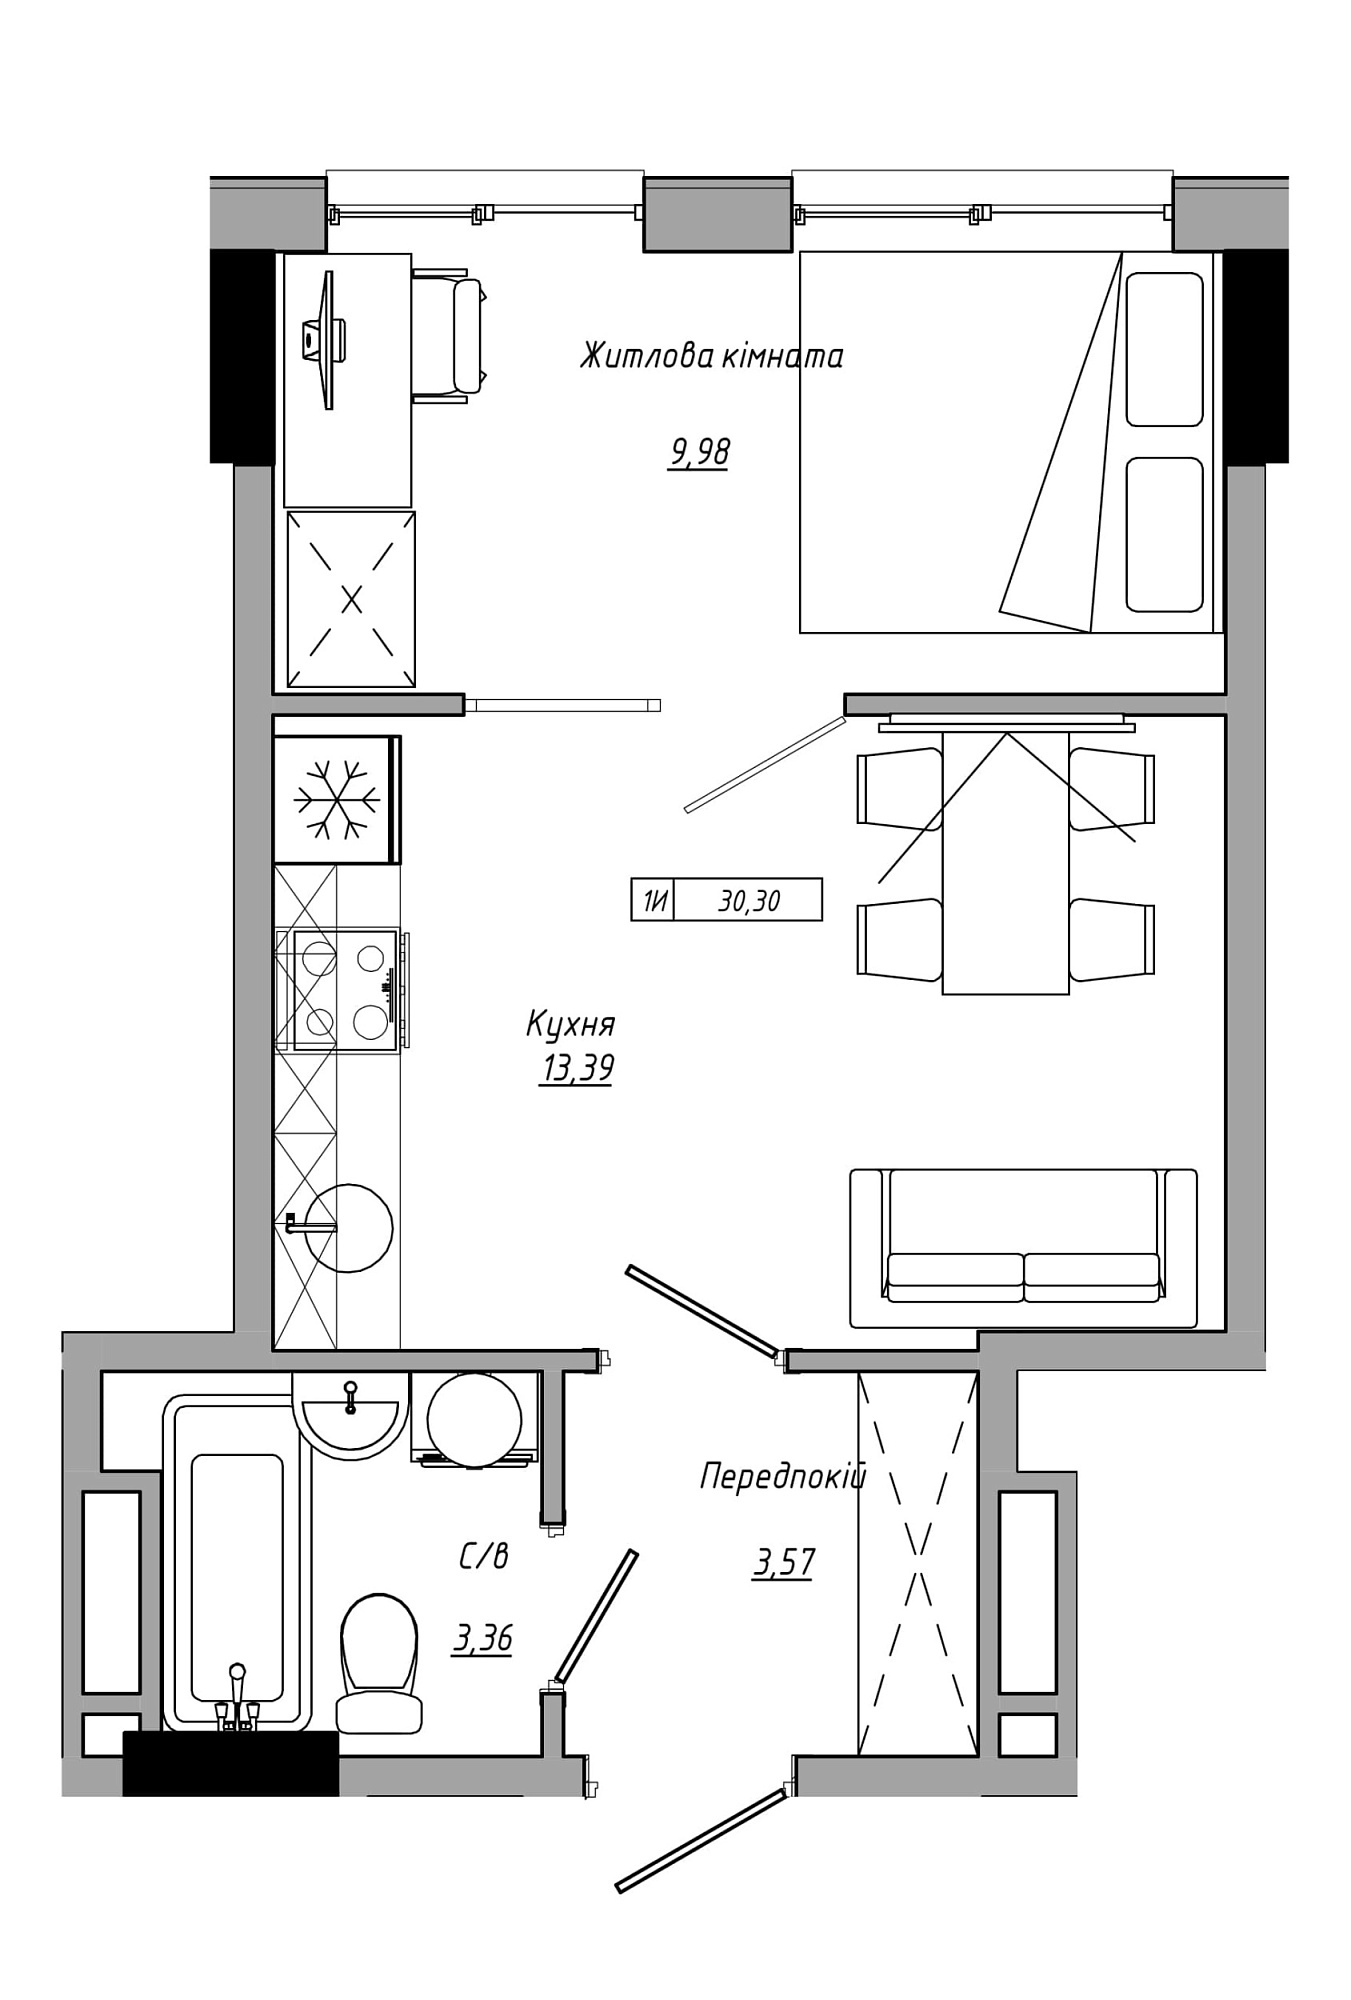 Планування 1-к квартира площею 30.3м2, AB-21-05/00012.